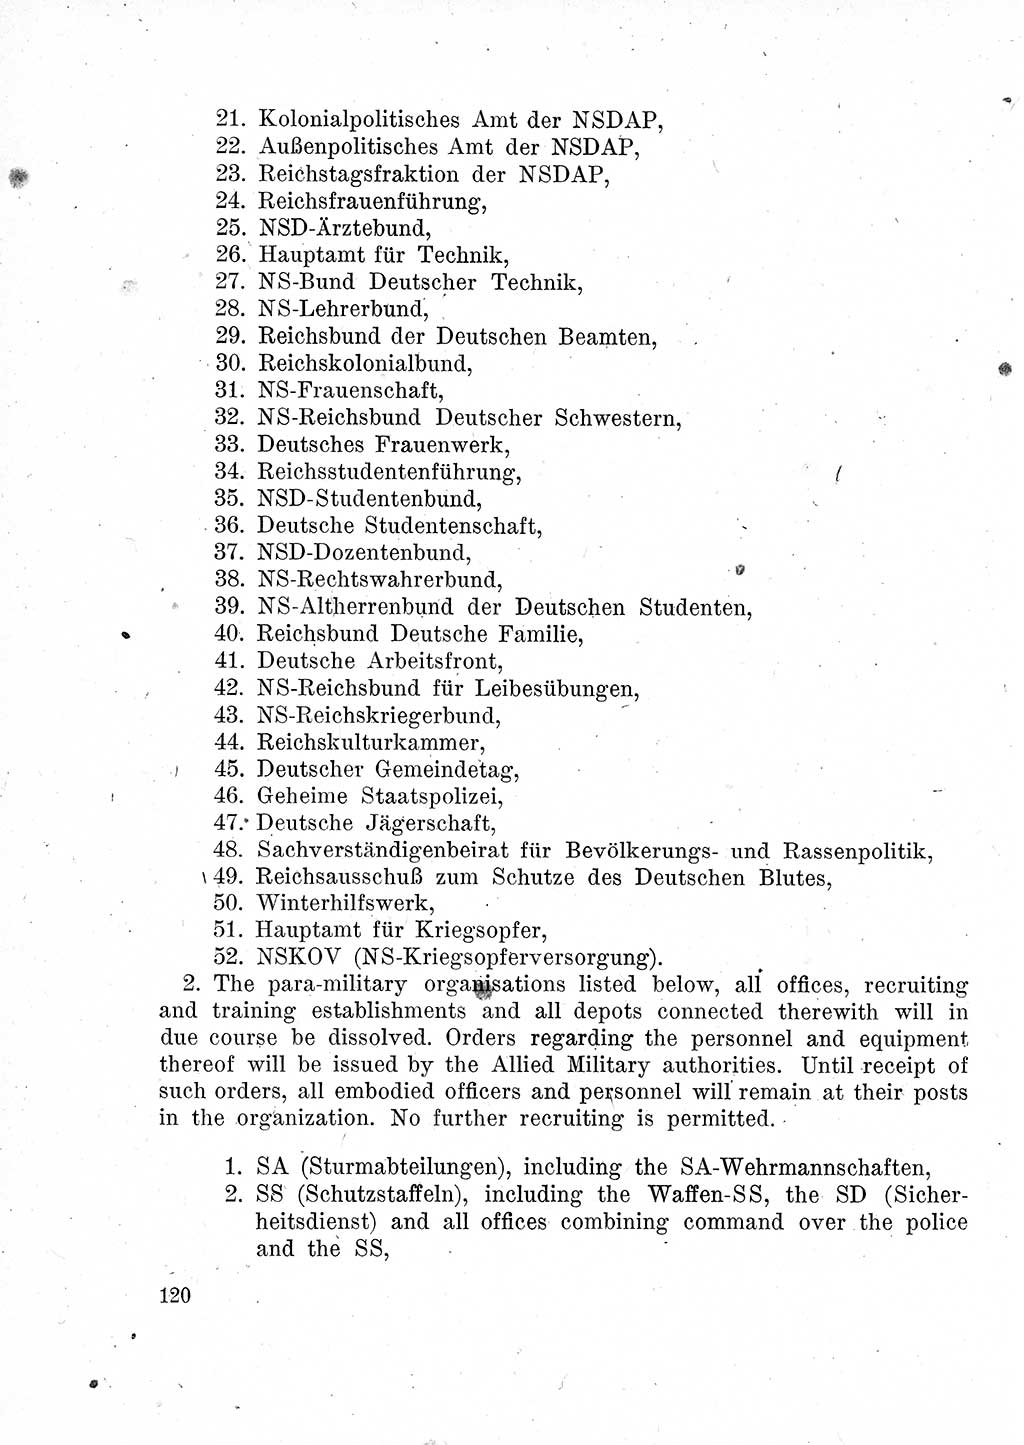 Das Recht der Besatzungsmacht (Deutschland), Proklamationen, Deklerationen, Verordnungen, Gesetze und Bekanntmachungen 1947, Seite 120 (R. Bes. Dtl. 1947, S. 120)